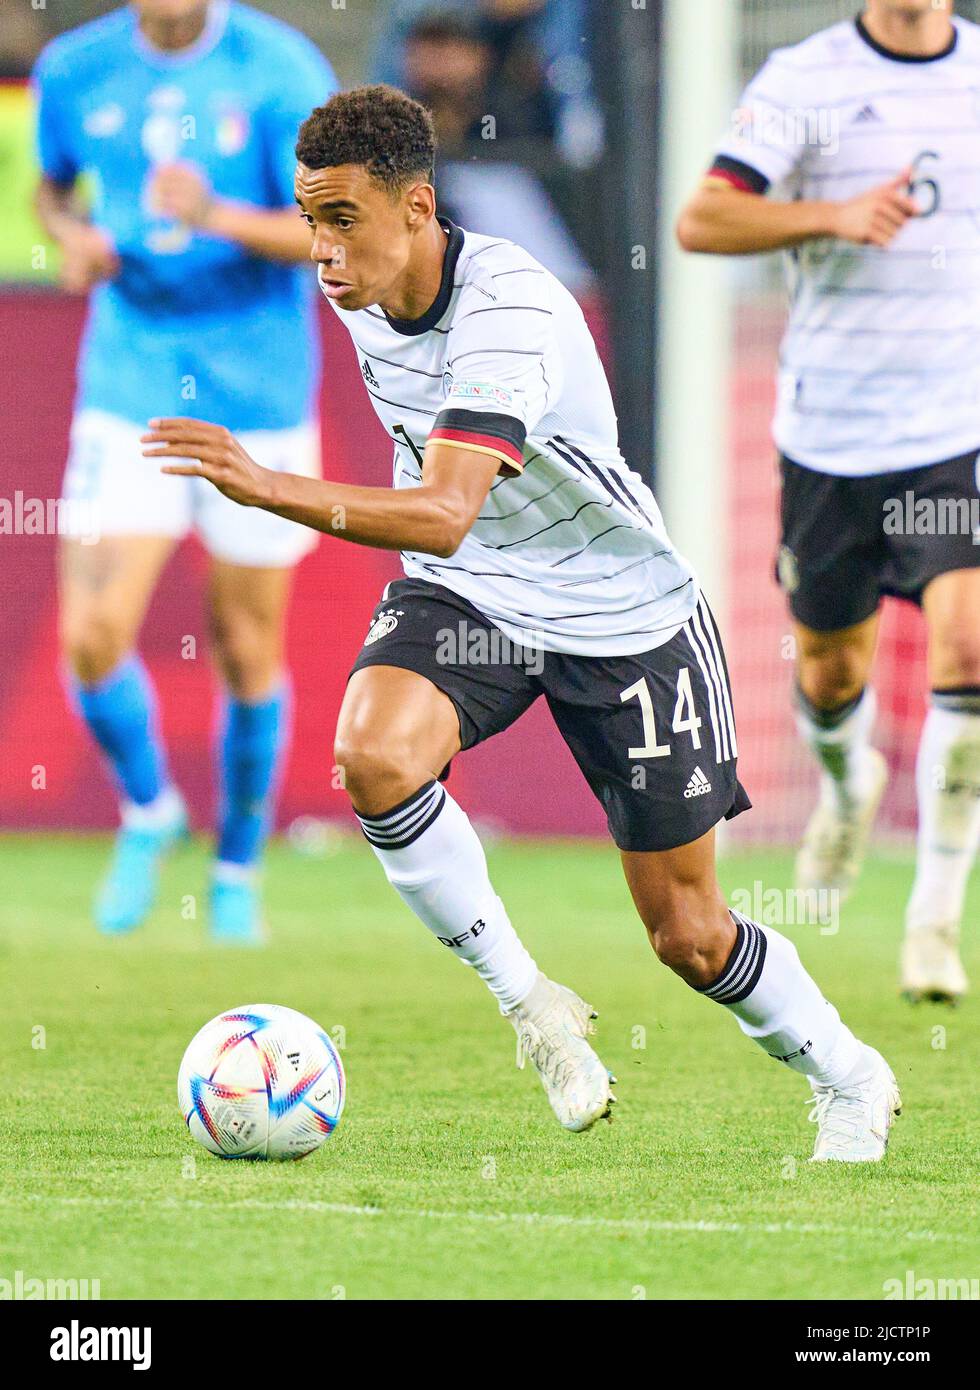 Jamal Musiala, DFB 14 nella UEFA Nations League 2022 partita GERMANIA - ITALIA 5-2 nella stagione 2022/2023 giugno 14, 2022 a Mönchengladbach, Germania. © Peter Schatz / Alamy Live News Foto Stock